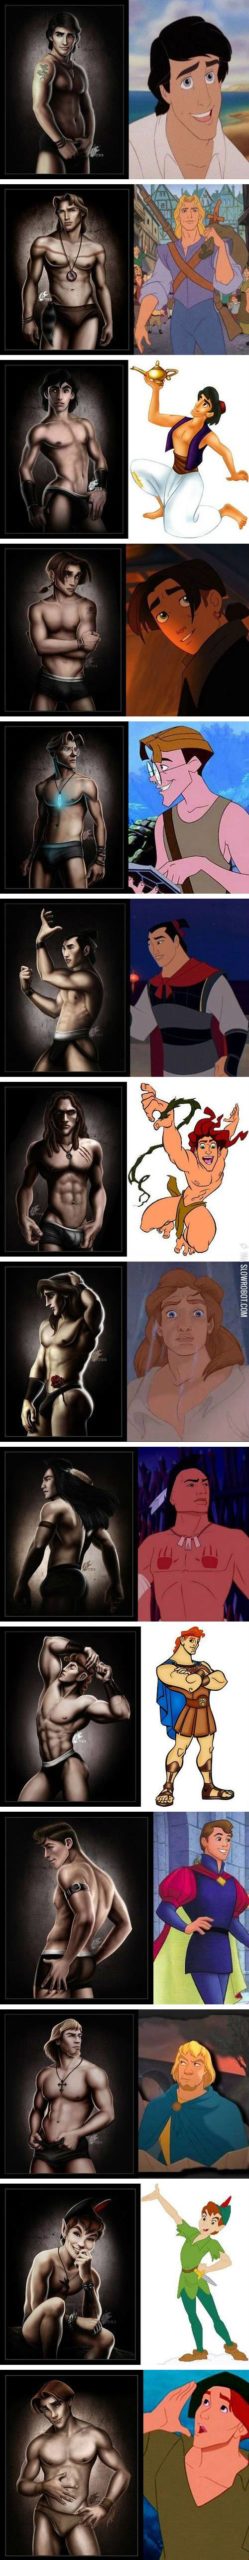 If+Disney+princes+were+underwear+models.